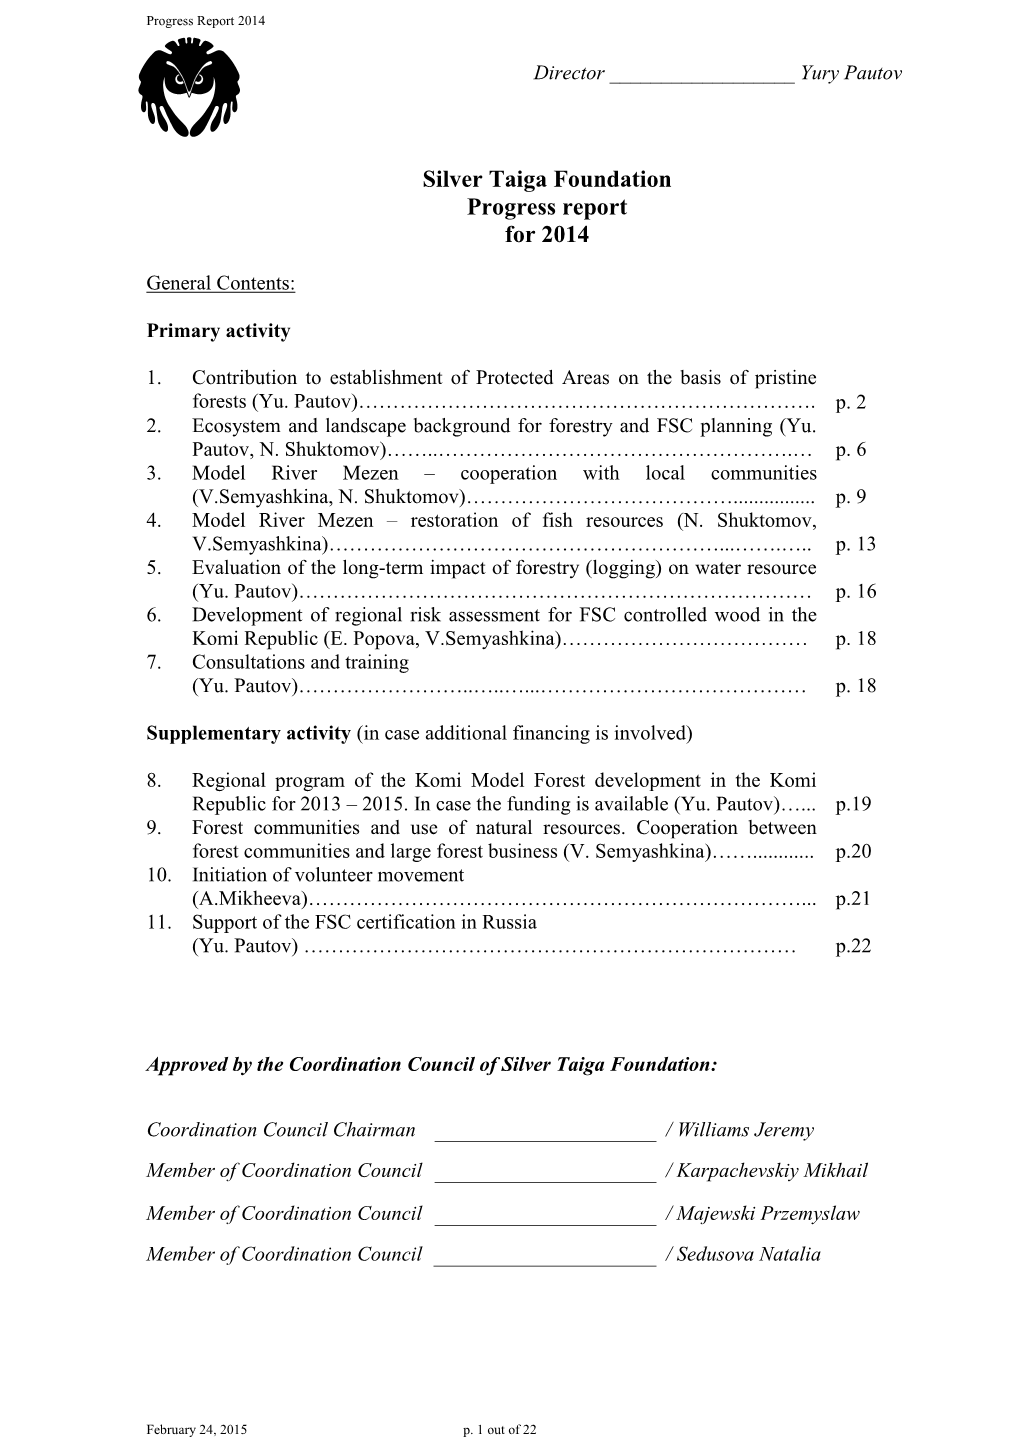 Silver Taiga Foundation Progress Report for 2014